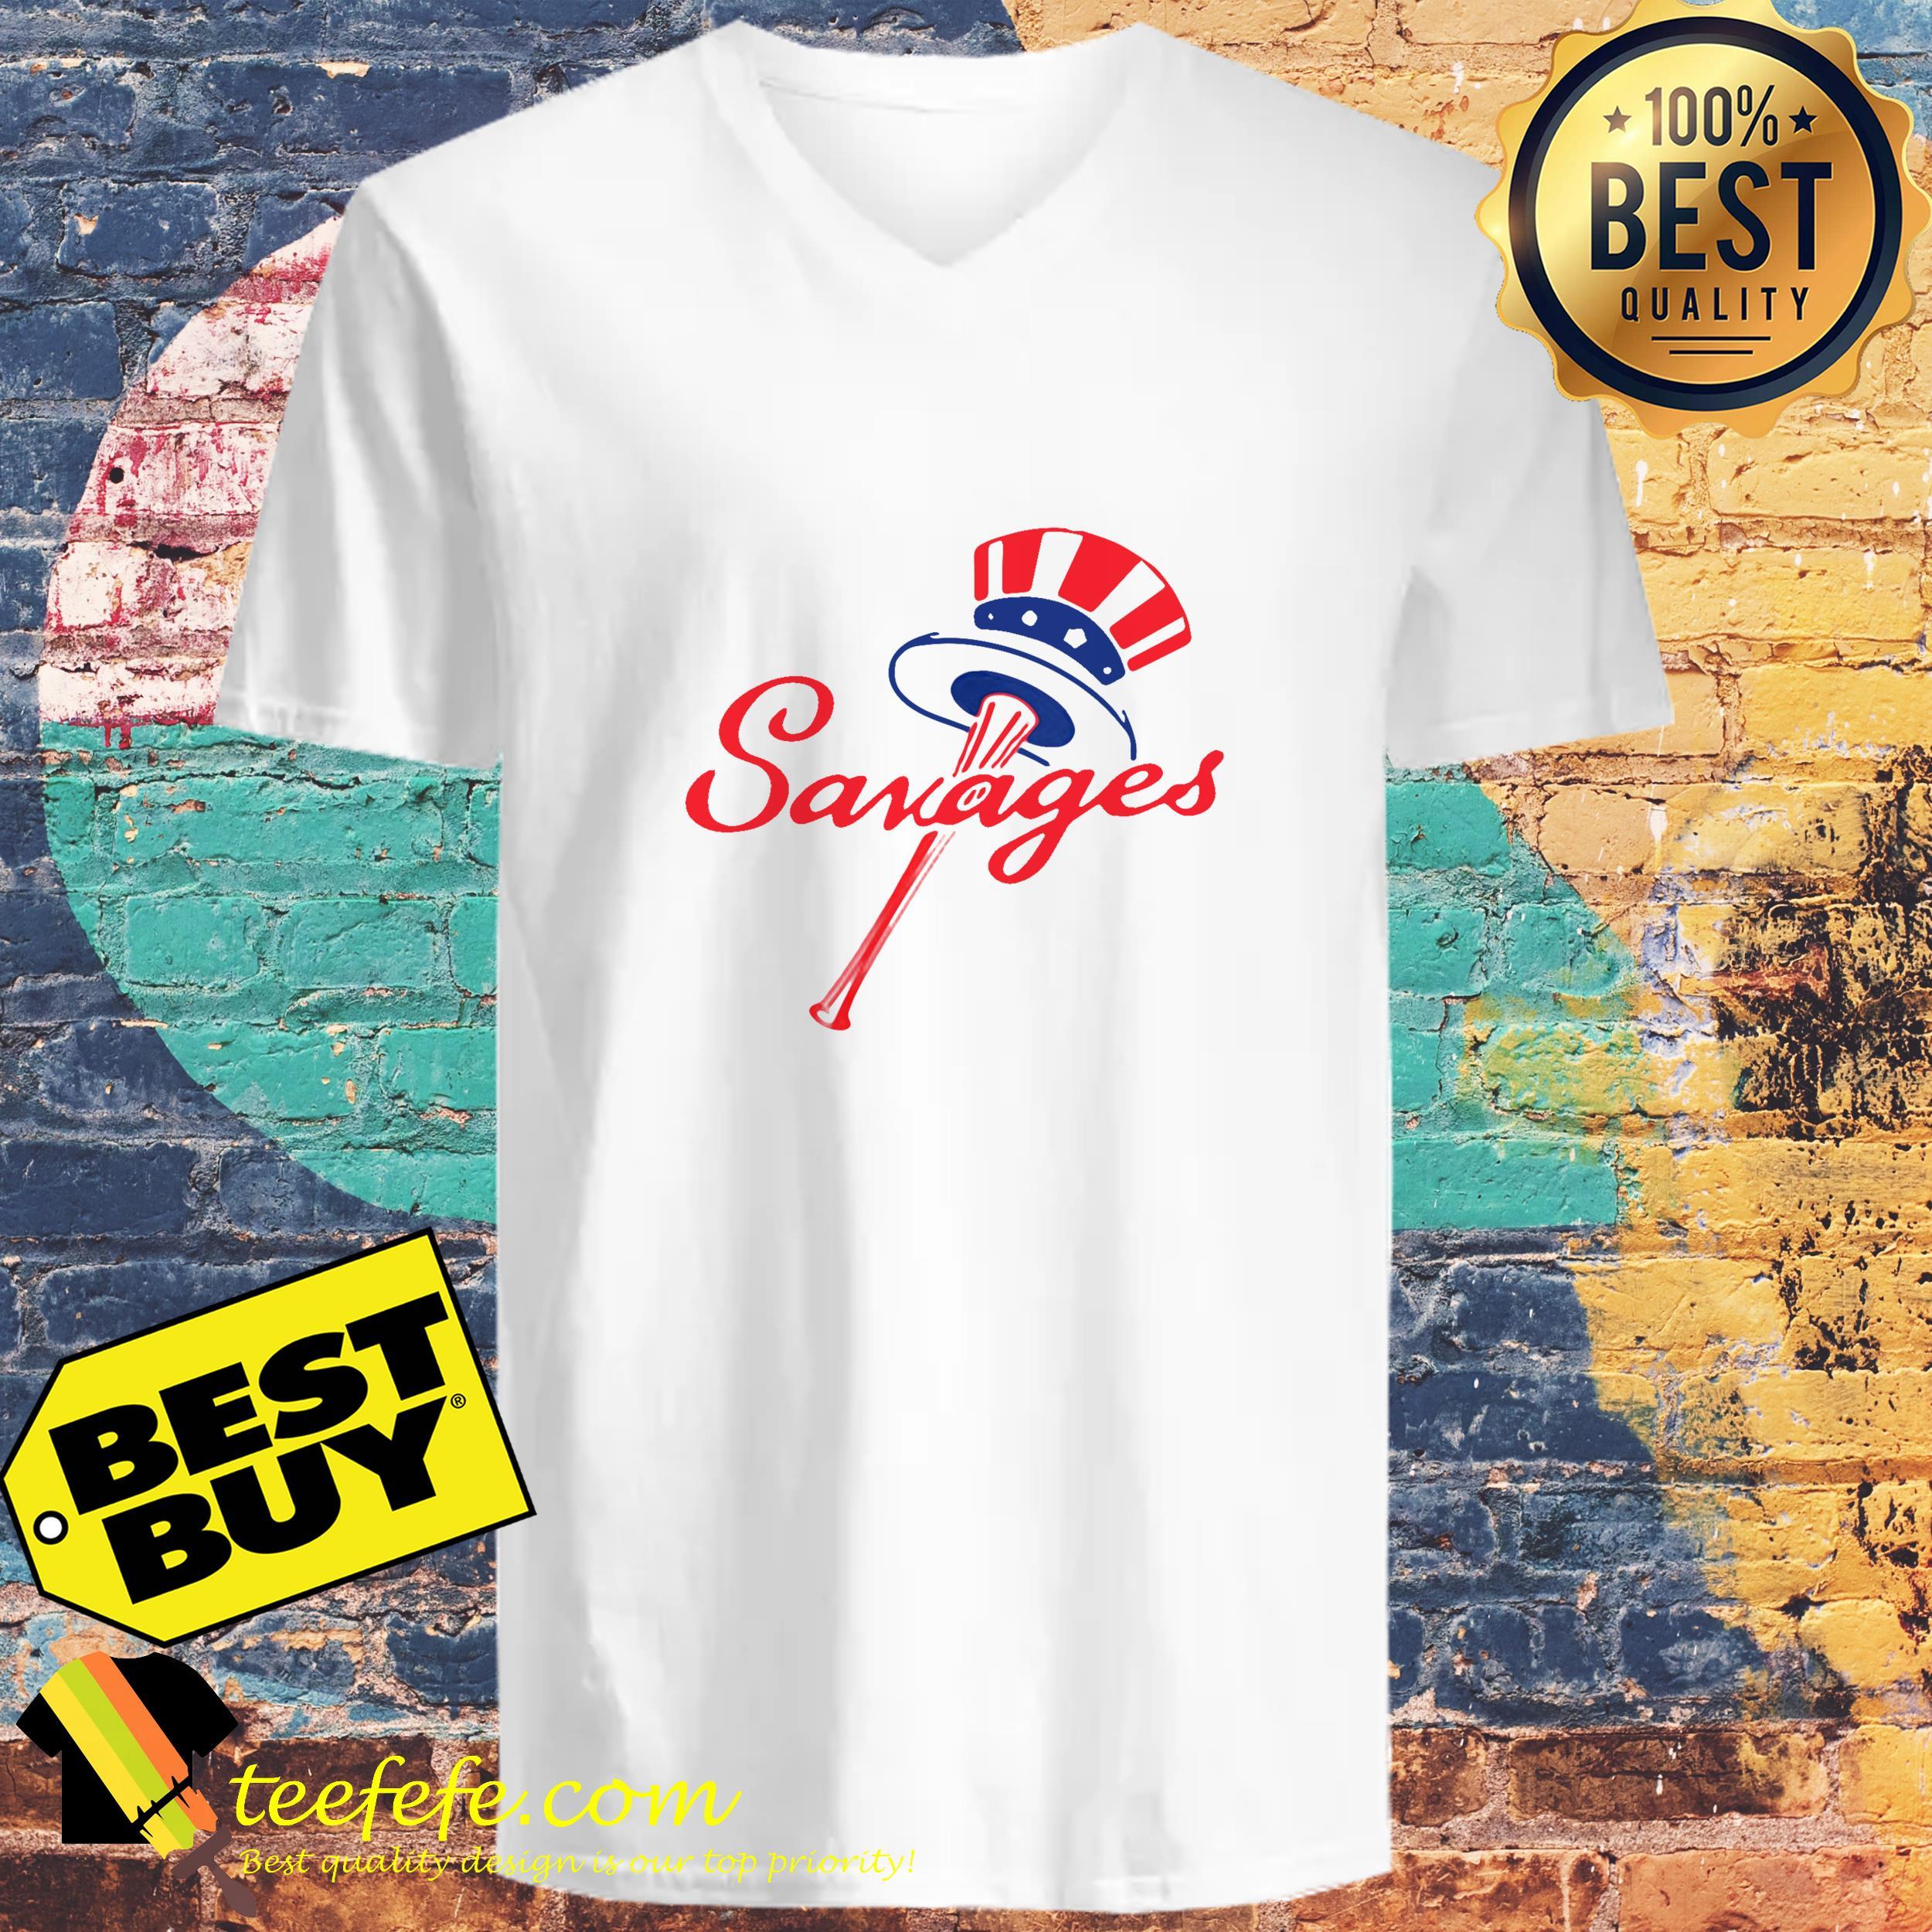 Savages Logo - Yankees Fucking Savages logo shirt